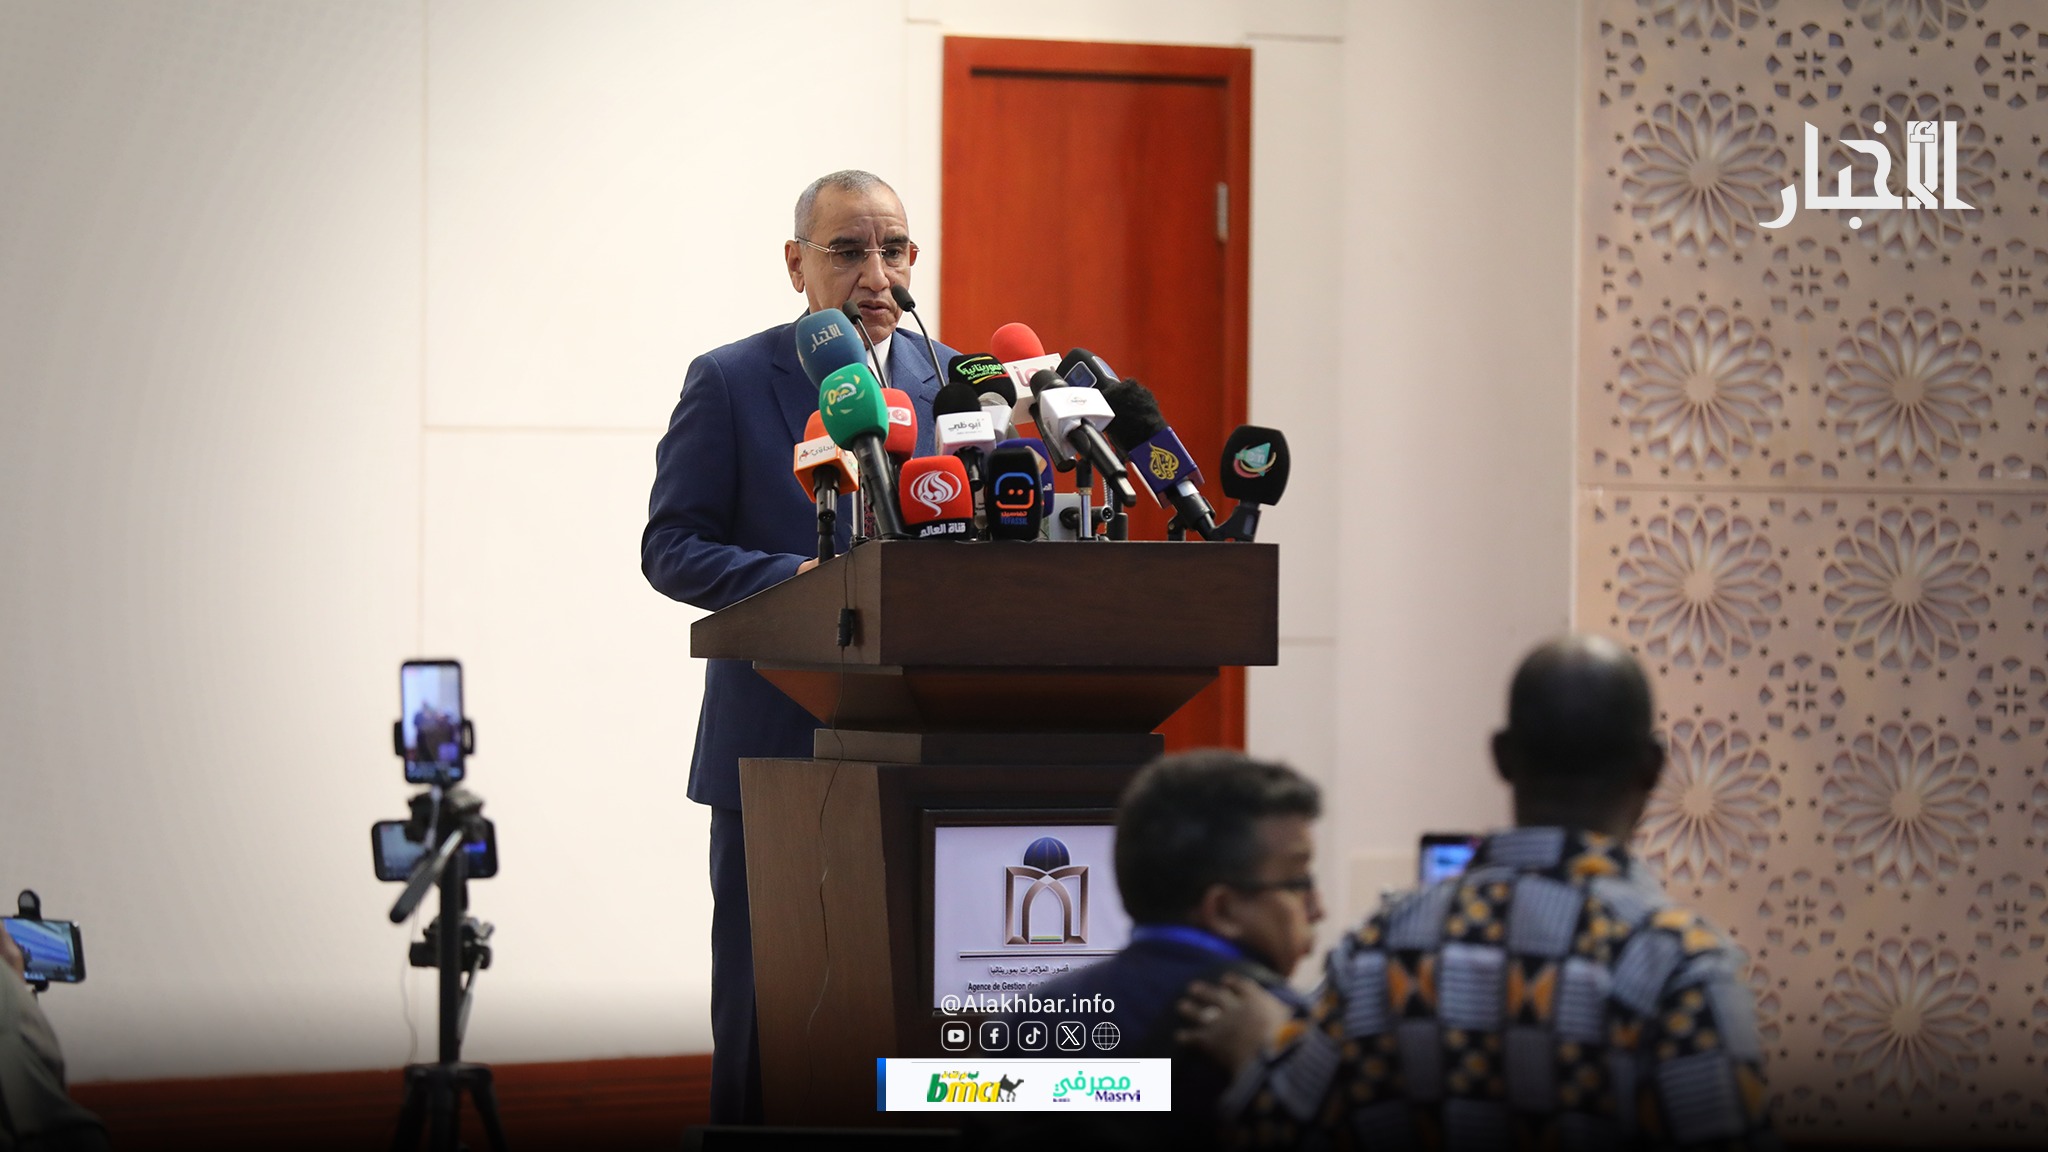 Des partis de l’opposition mauritanienne boycottent la cérémonie de clôture des journées de concertations